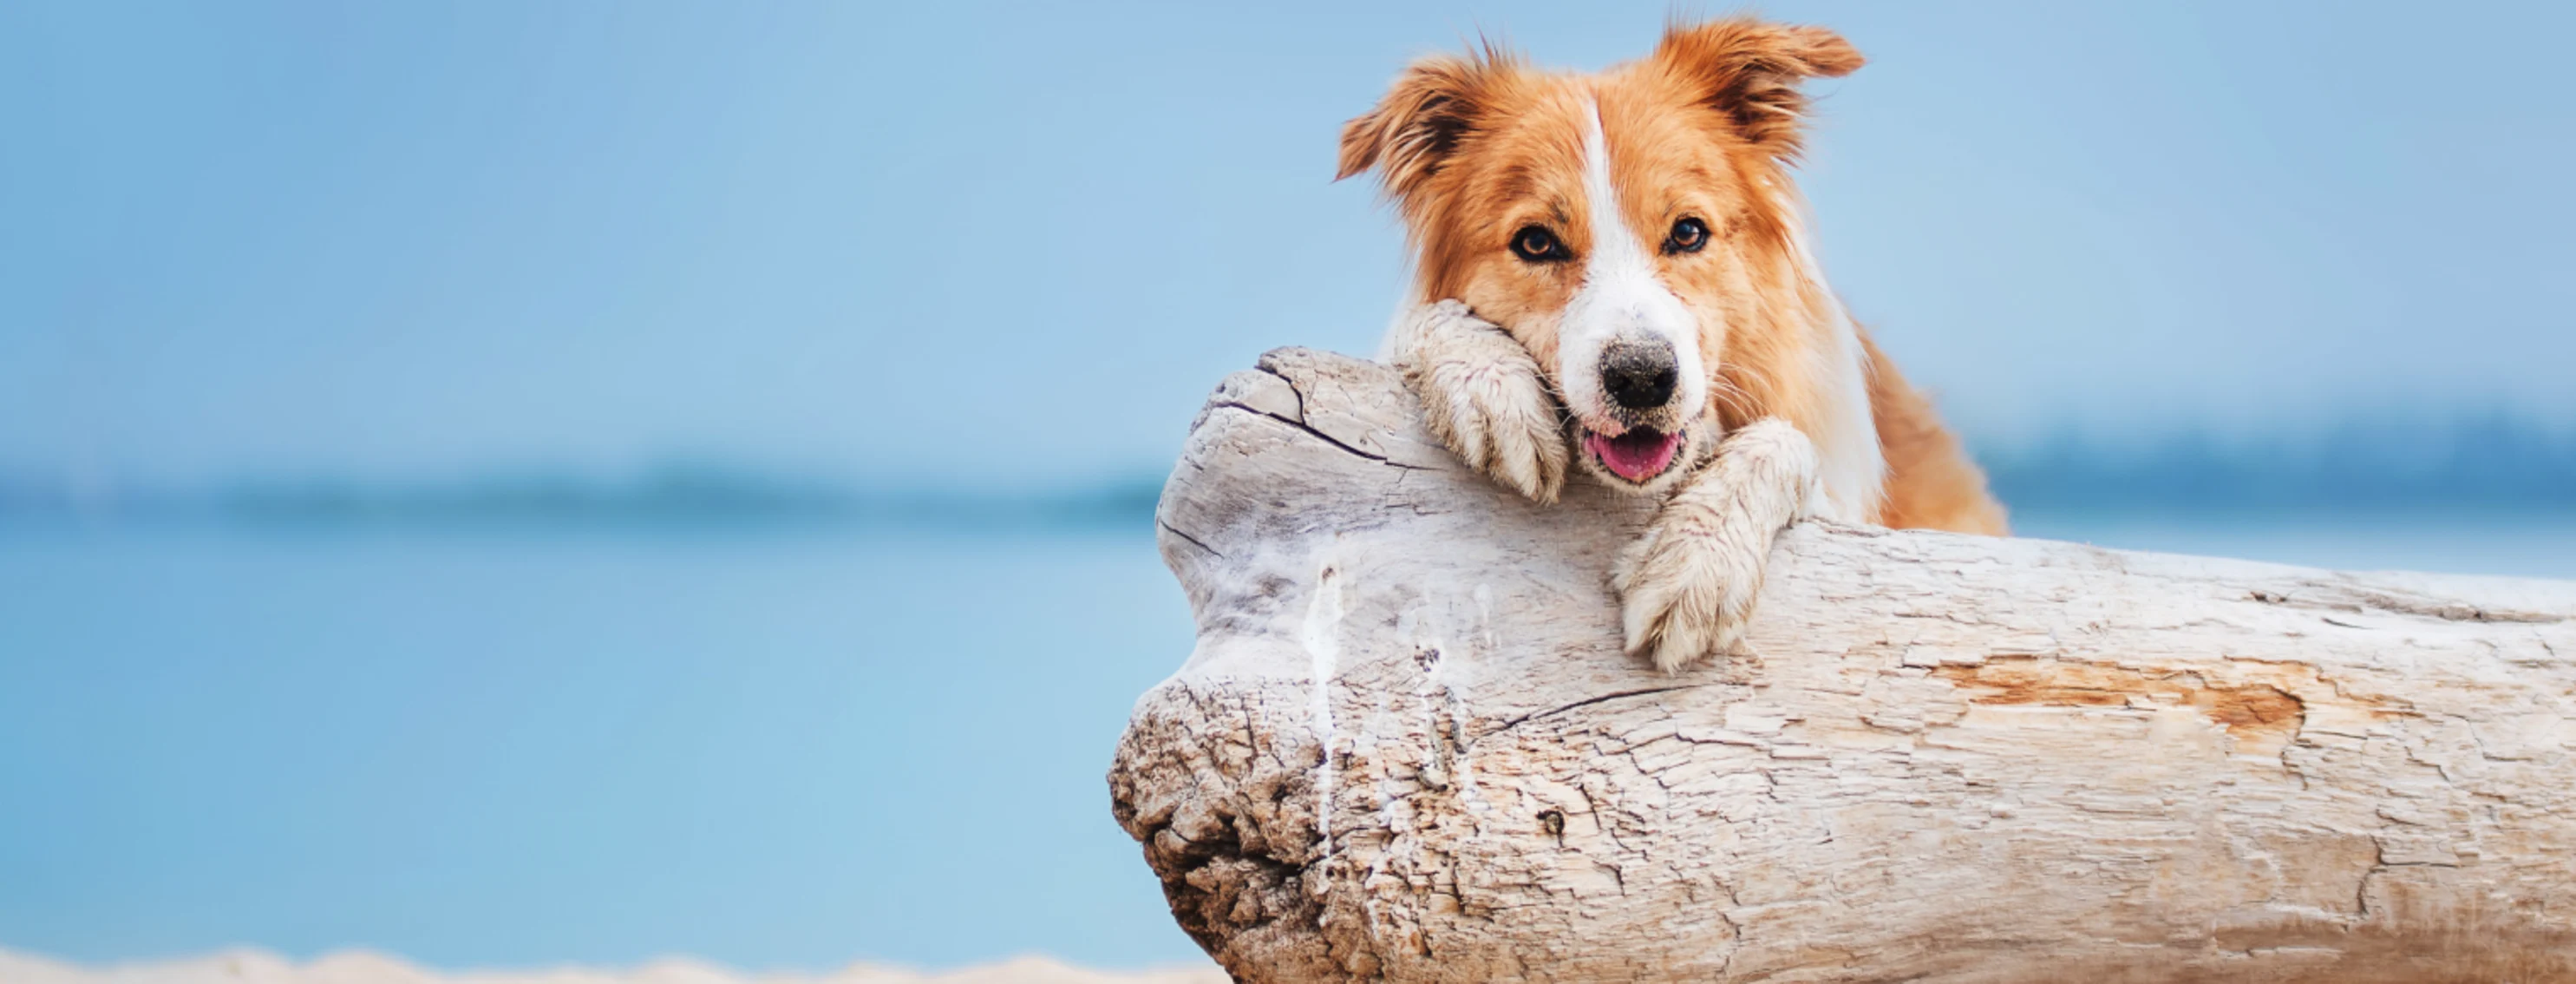 dog sitting against a log